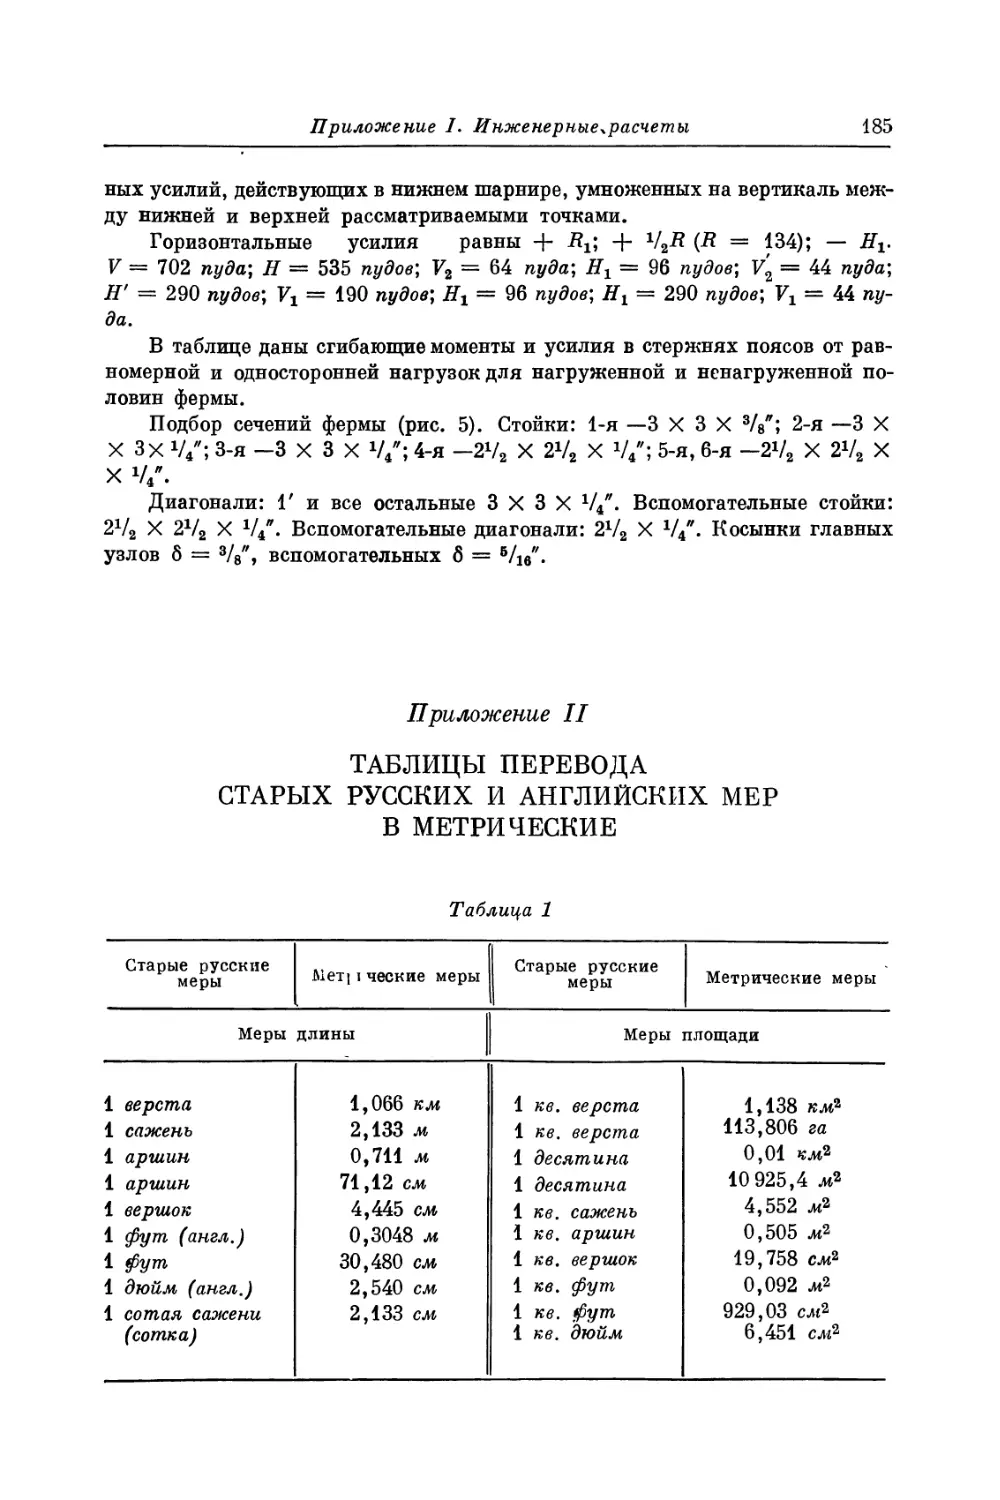 Приложение II. Таблицы перевода старых русских и английских мер в метрические